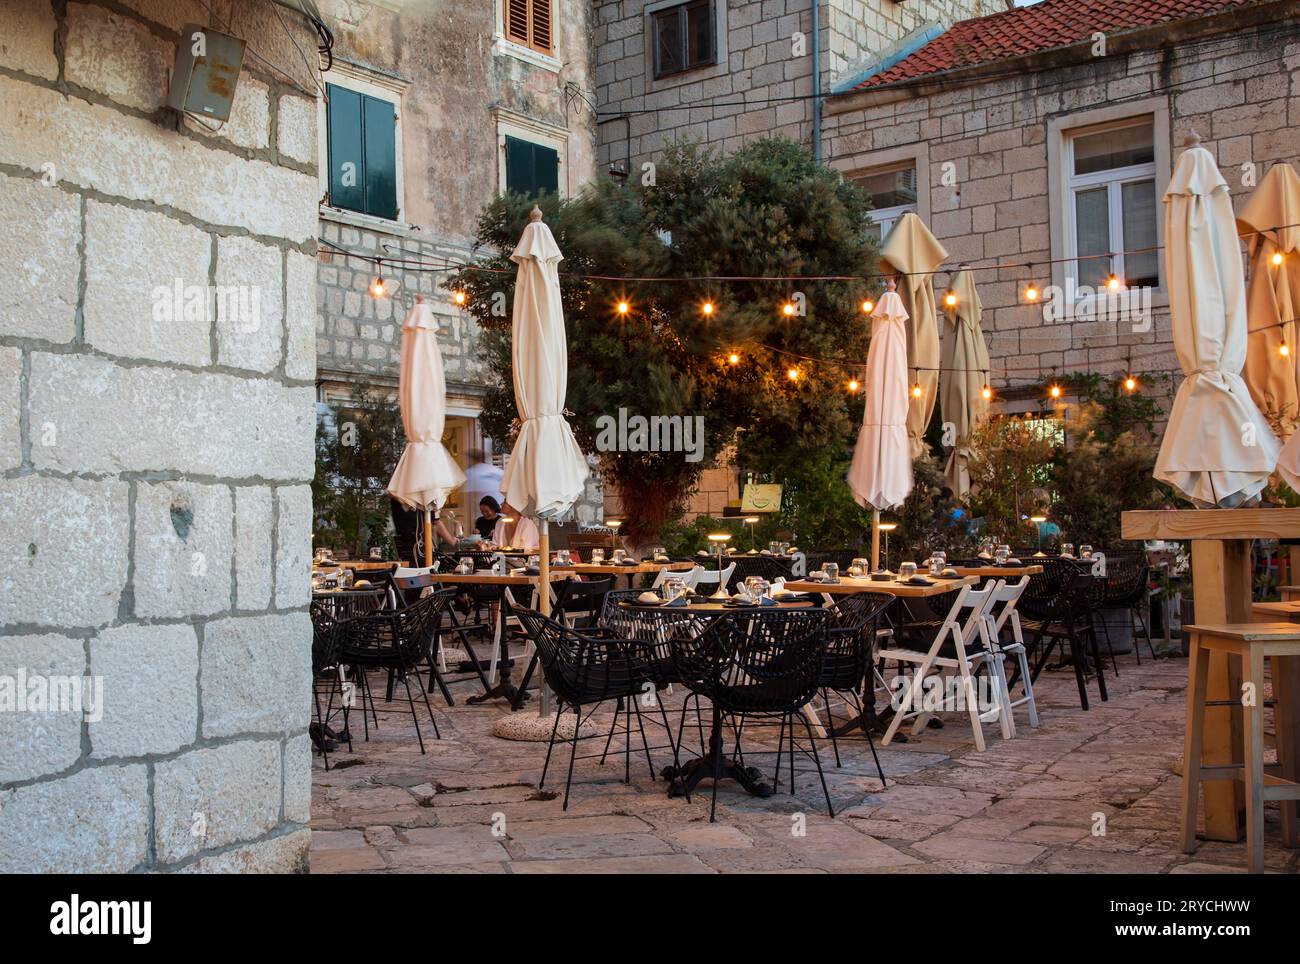 Korcula, Croazia, 17 settembre 2023: Veduta della vecchia strada nella città vecchia di Korcula, Croazia Foto Stock